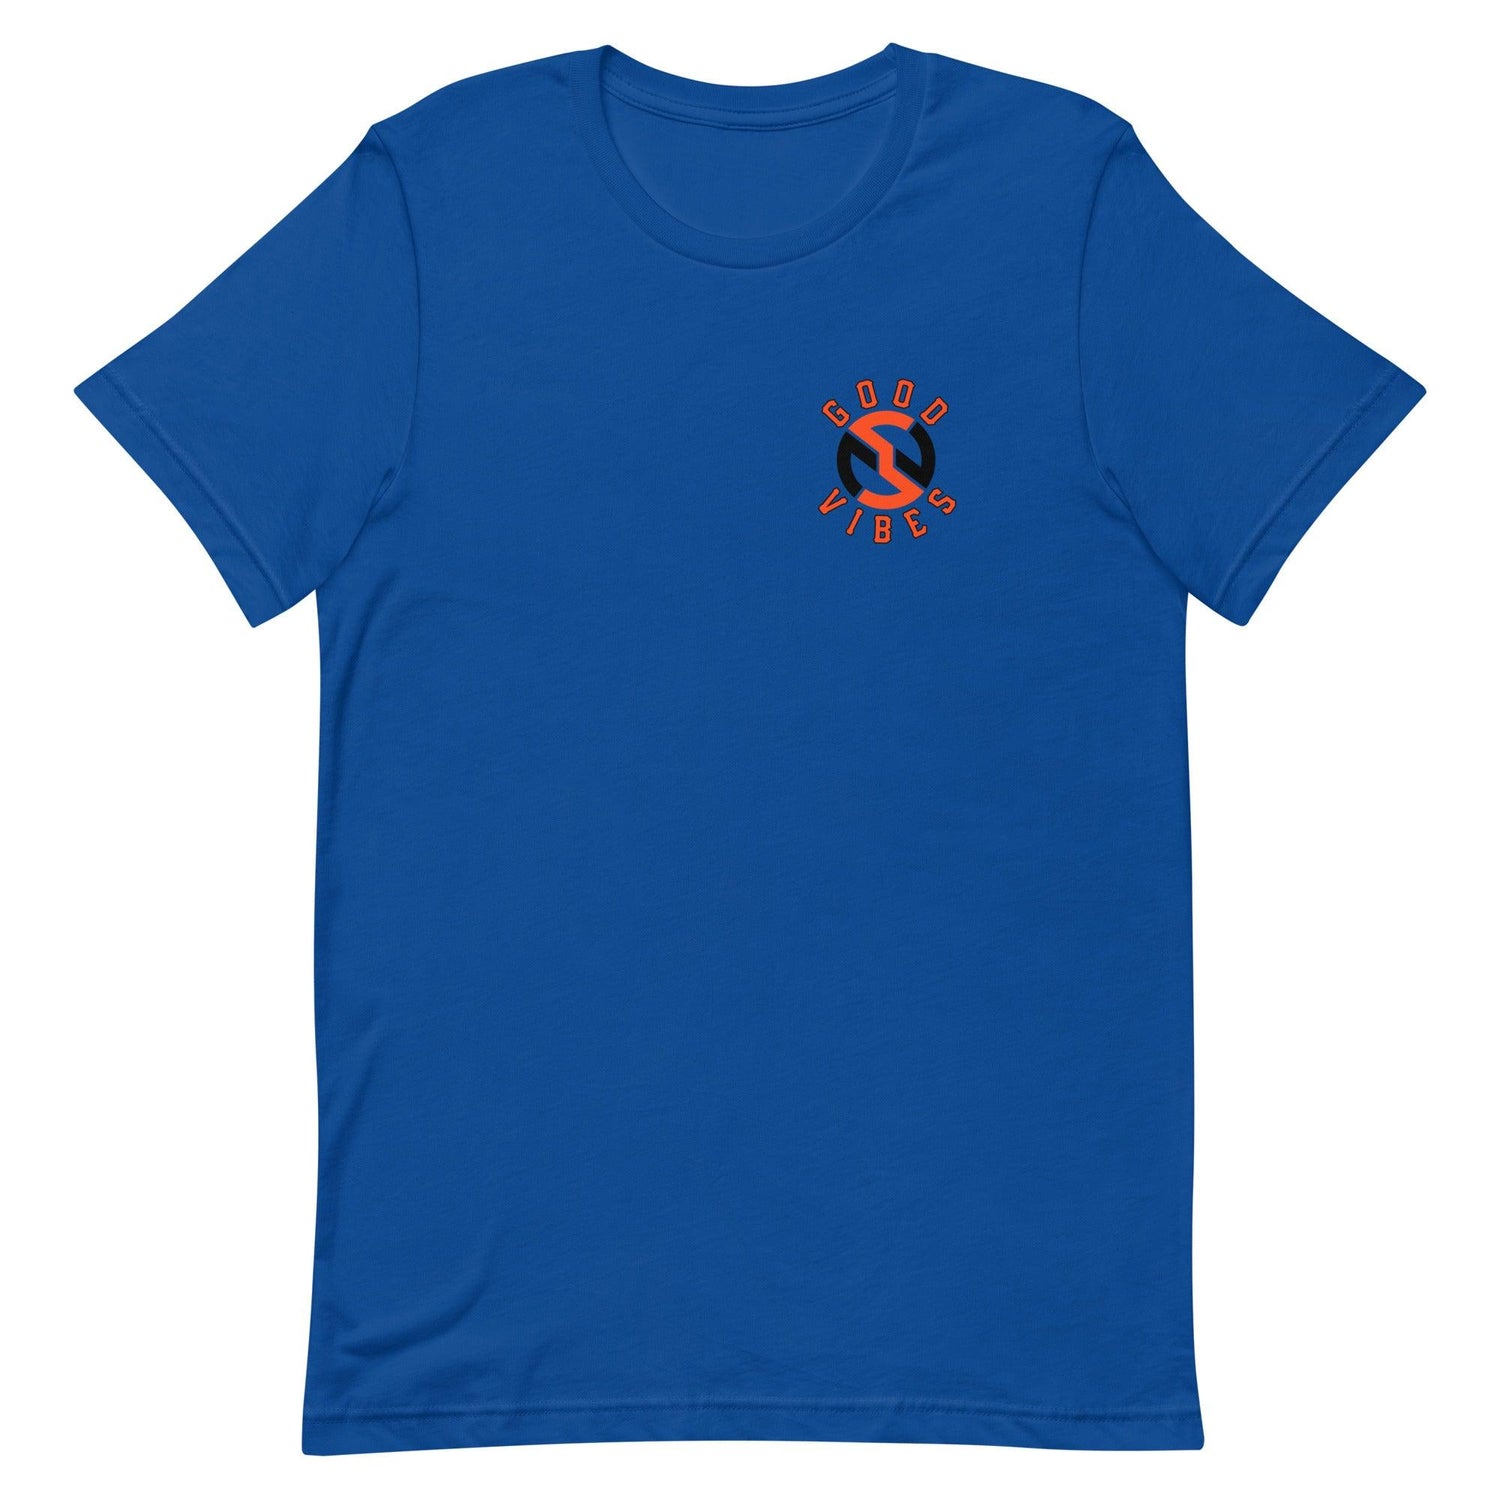 Nick Swiney “Signature” t-shirt - Fan Arch